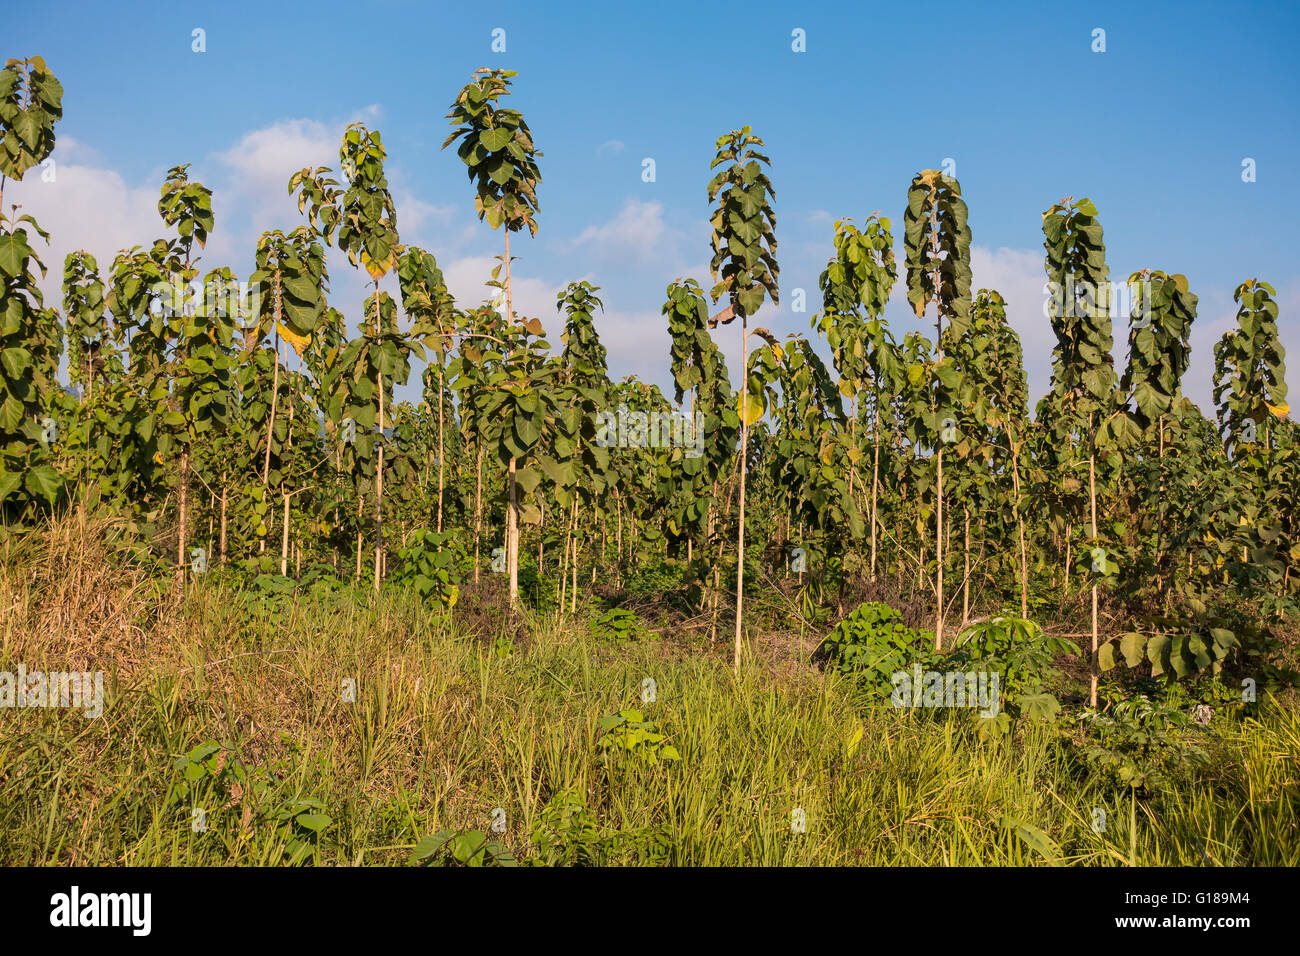 Die Halbinsel OSA, COSTA RICA - zwei Jahre alten Teakbäume auf nachhaltige Teak Plantage. Ernte bei 20 Jahren. Tectona grandis Stockfoto